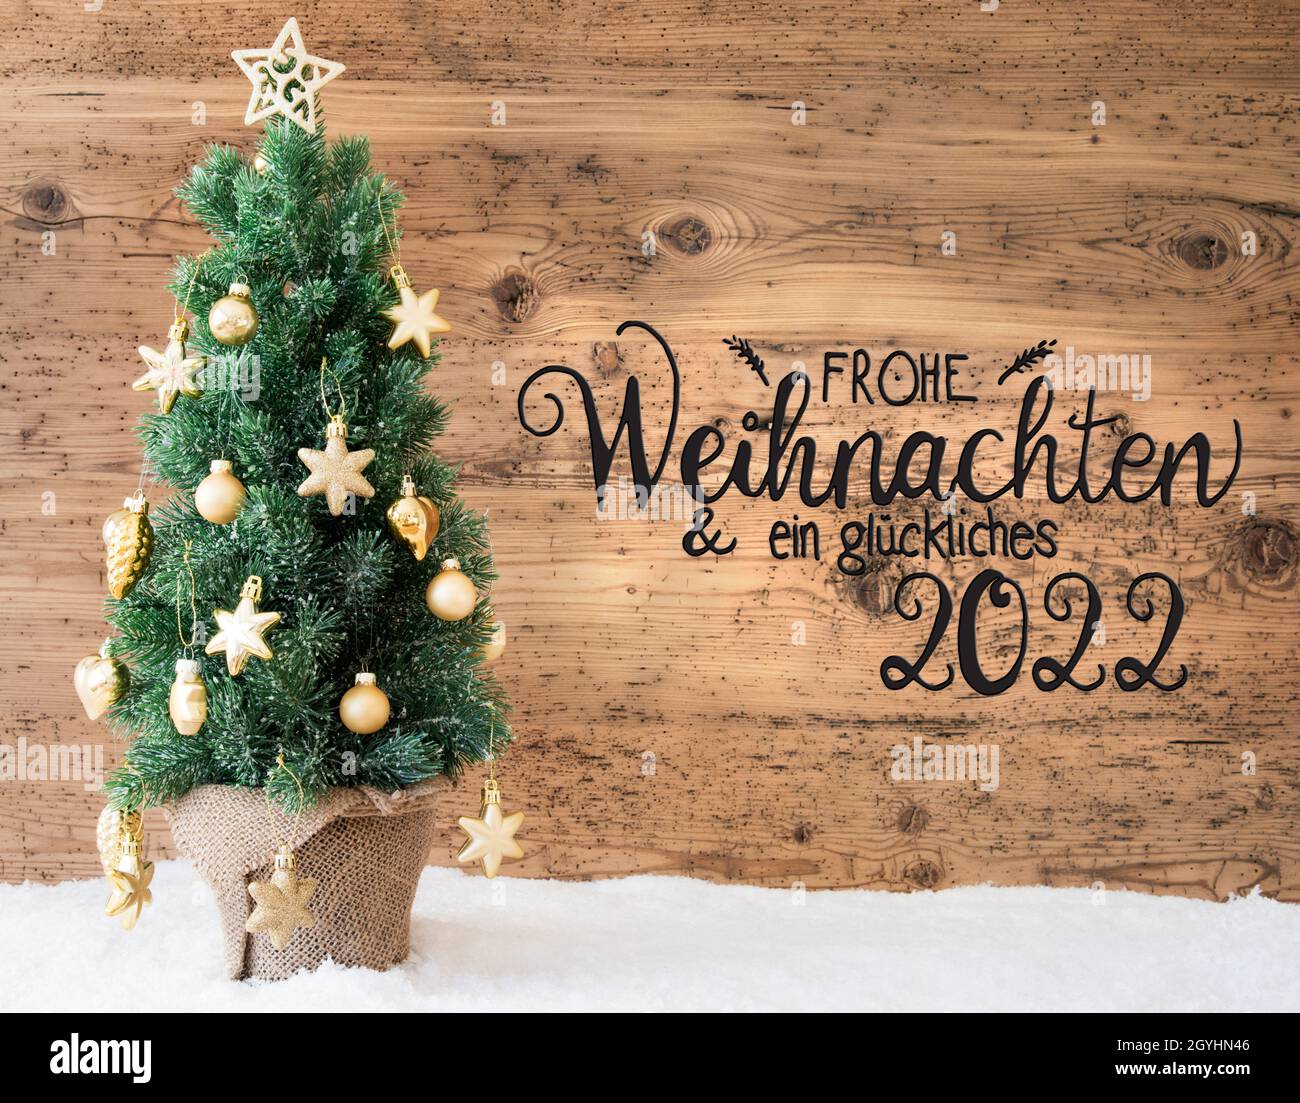 Deutsche Kalligraphie Frohe Weihnachten und ein glückliches 2022 bedeutet  Frohe Weihnachten und Ein glückliches 2022. Weihnachtsbaum Mit Goldenem  Ball Ornament Und Sn Stockfotografie - Alamy